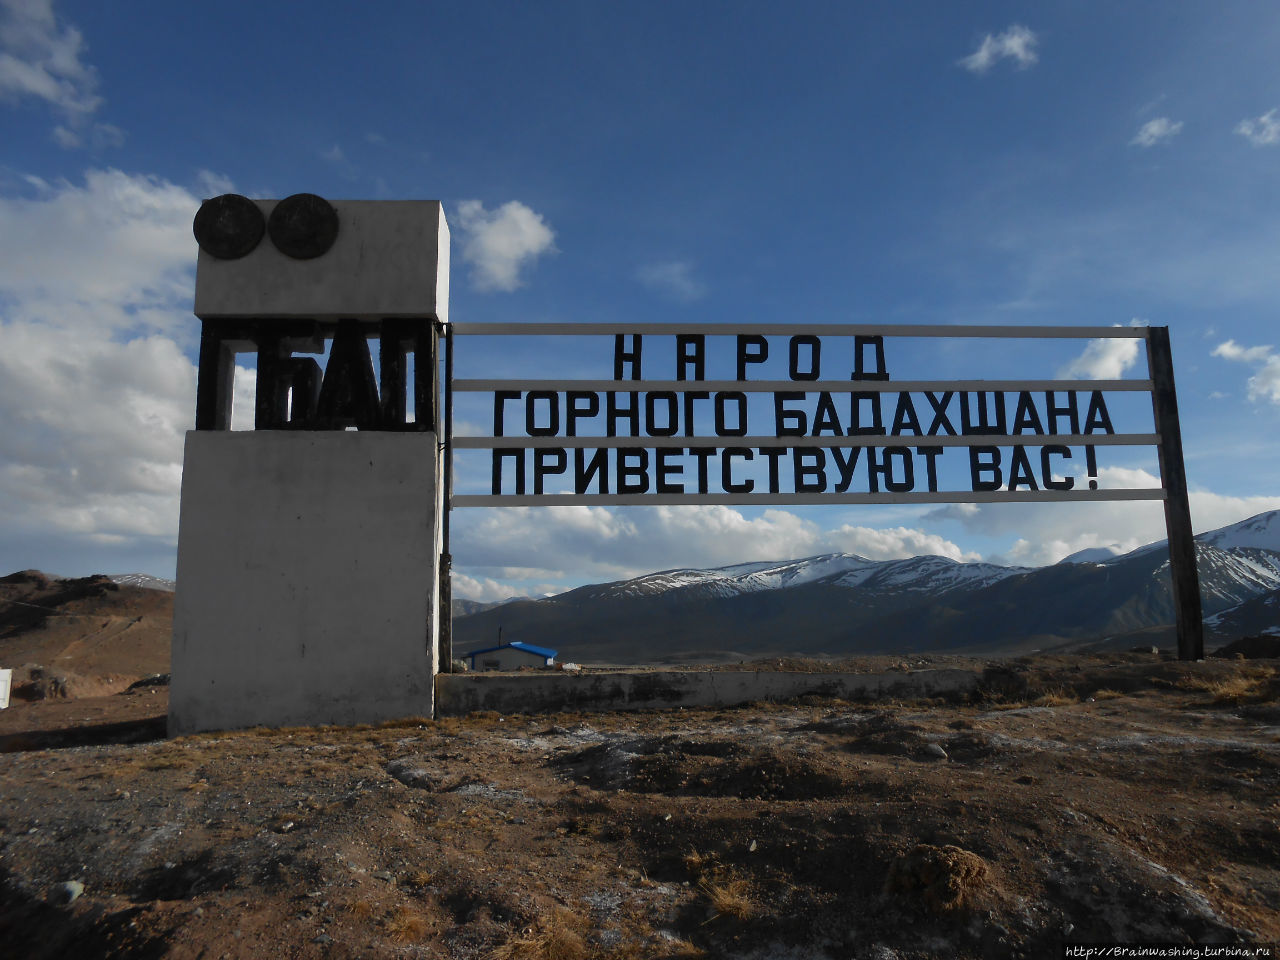 Киргизско-таджикская граница